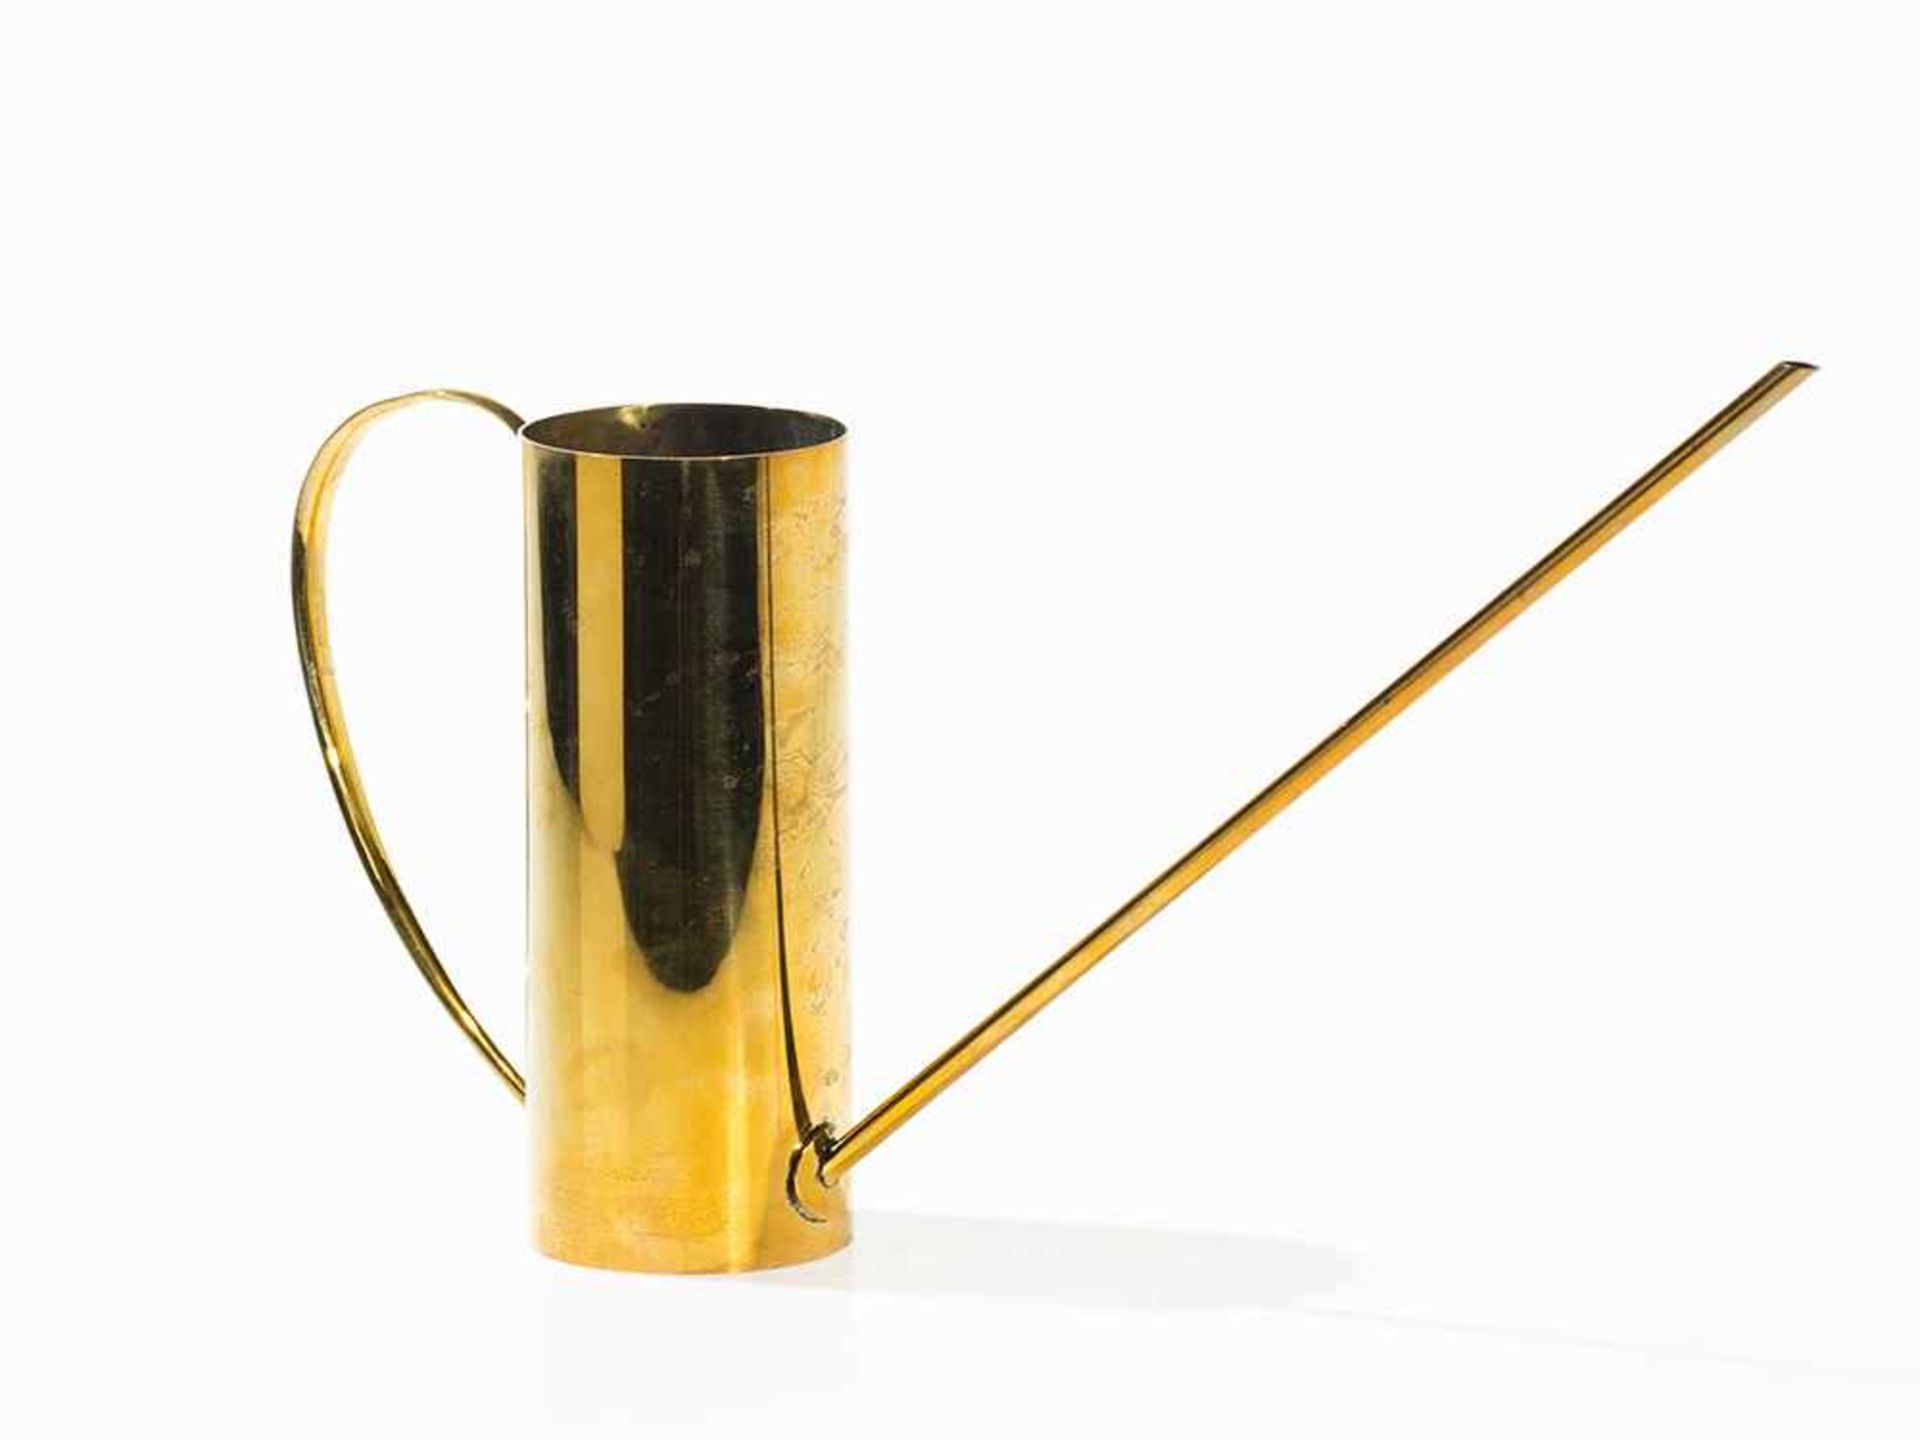 Karl Hagenauer, Watering Can, Austria, 1950s Copper, brass. Vienna, Austria, 1950s. Design: Karl